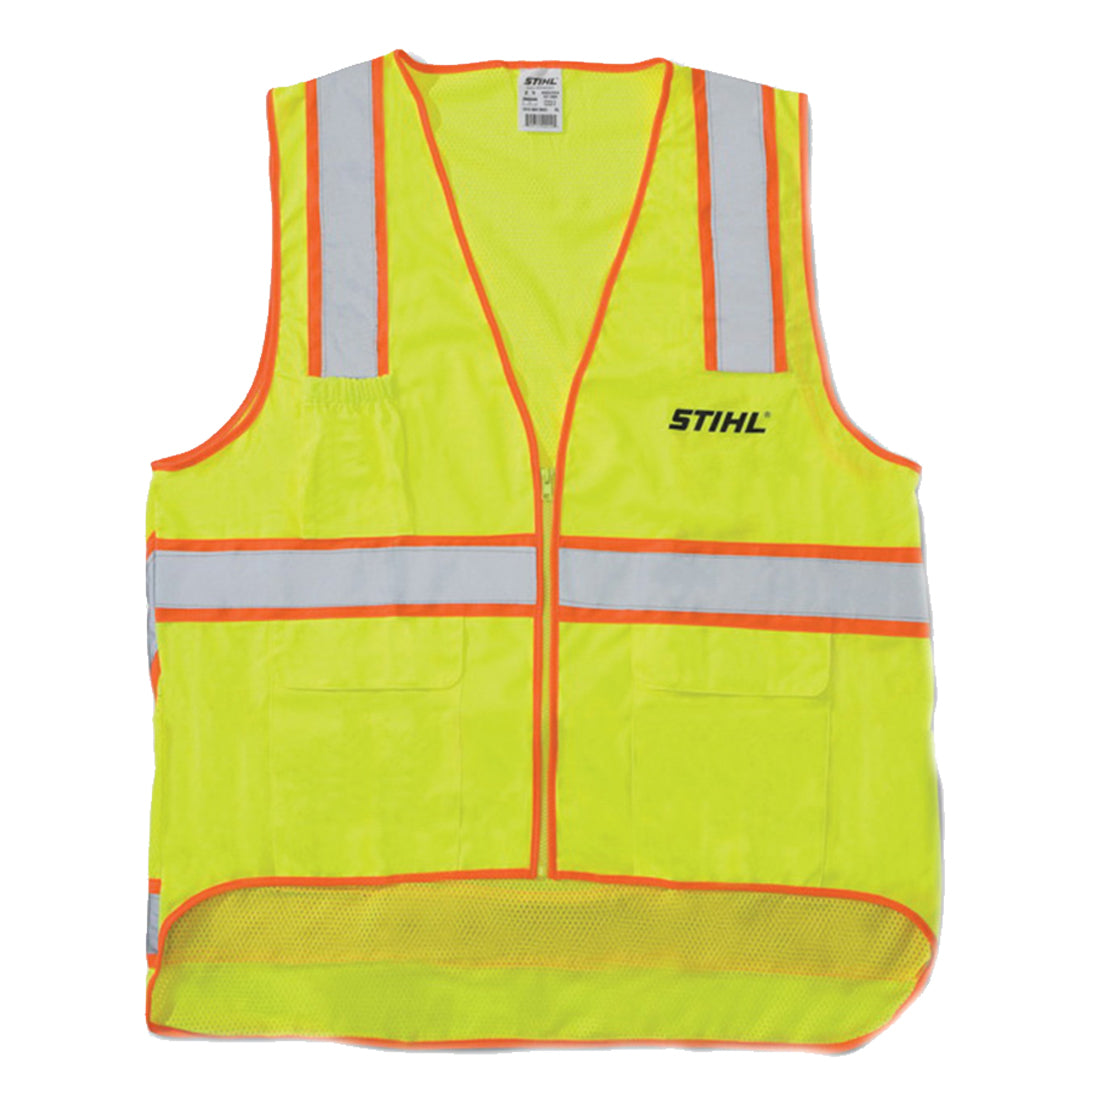 Stihl Reflective Safety Vest